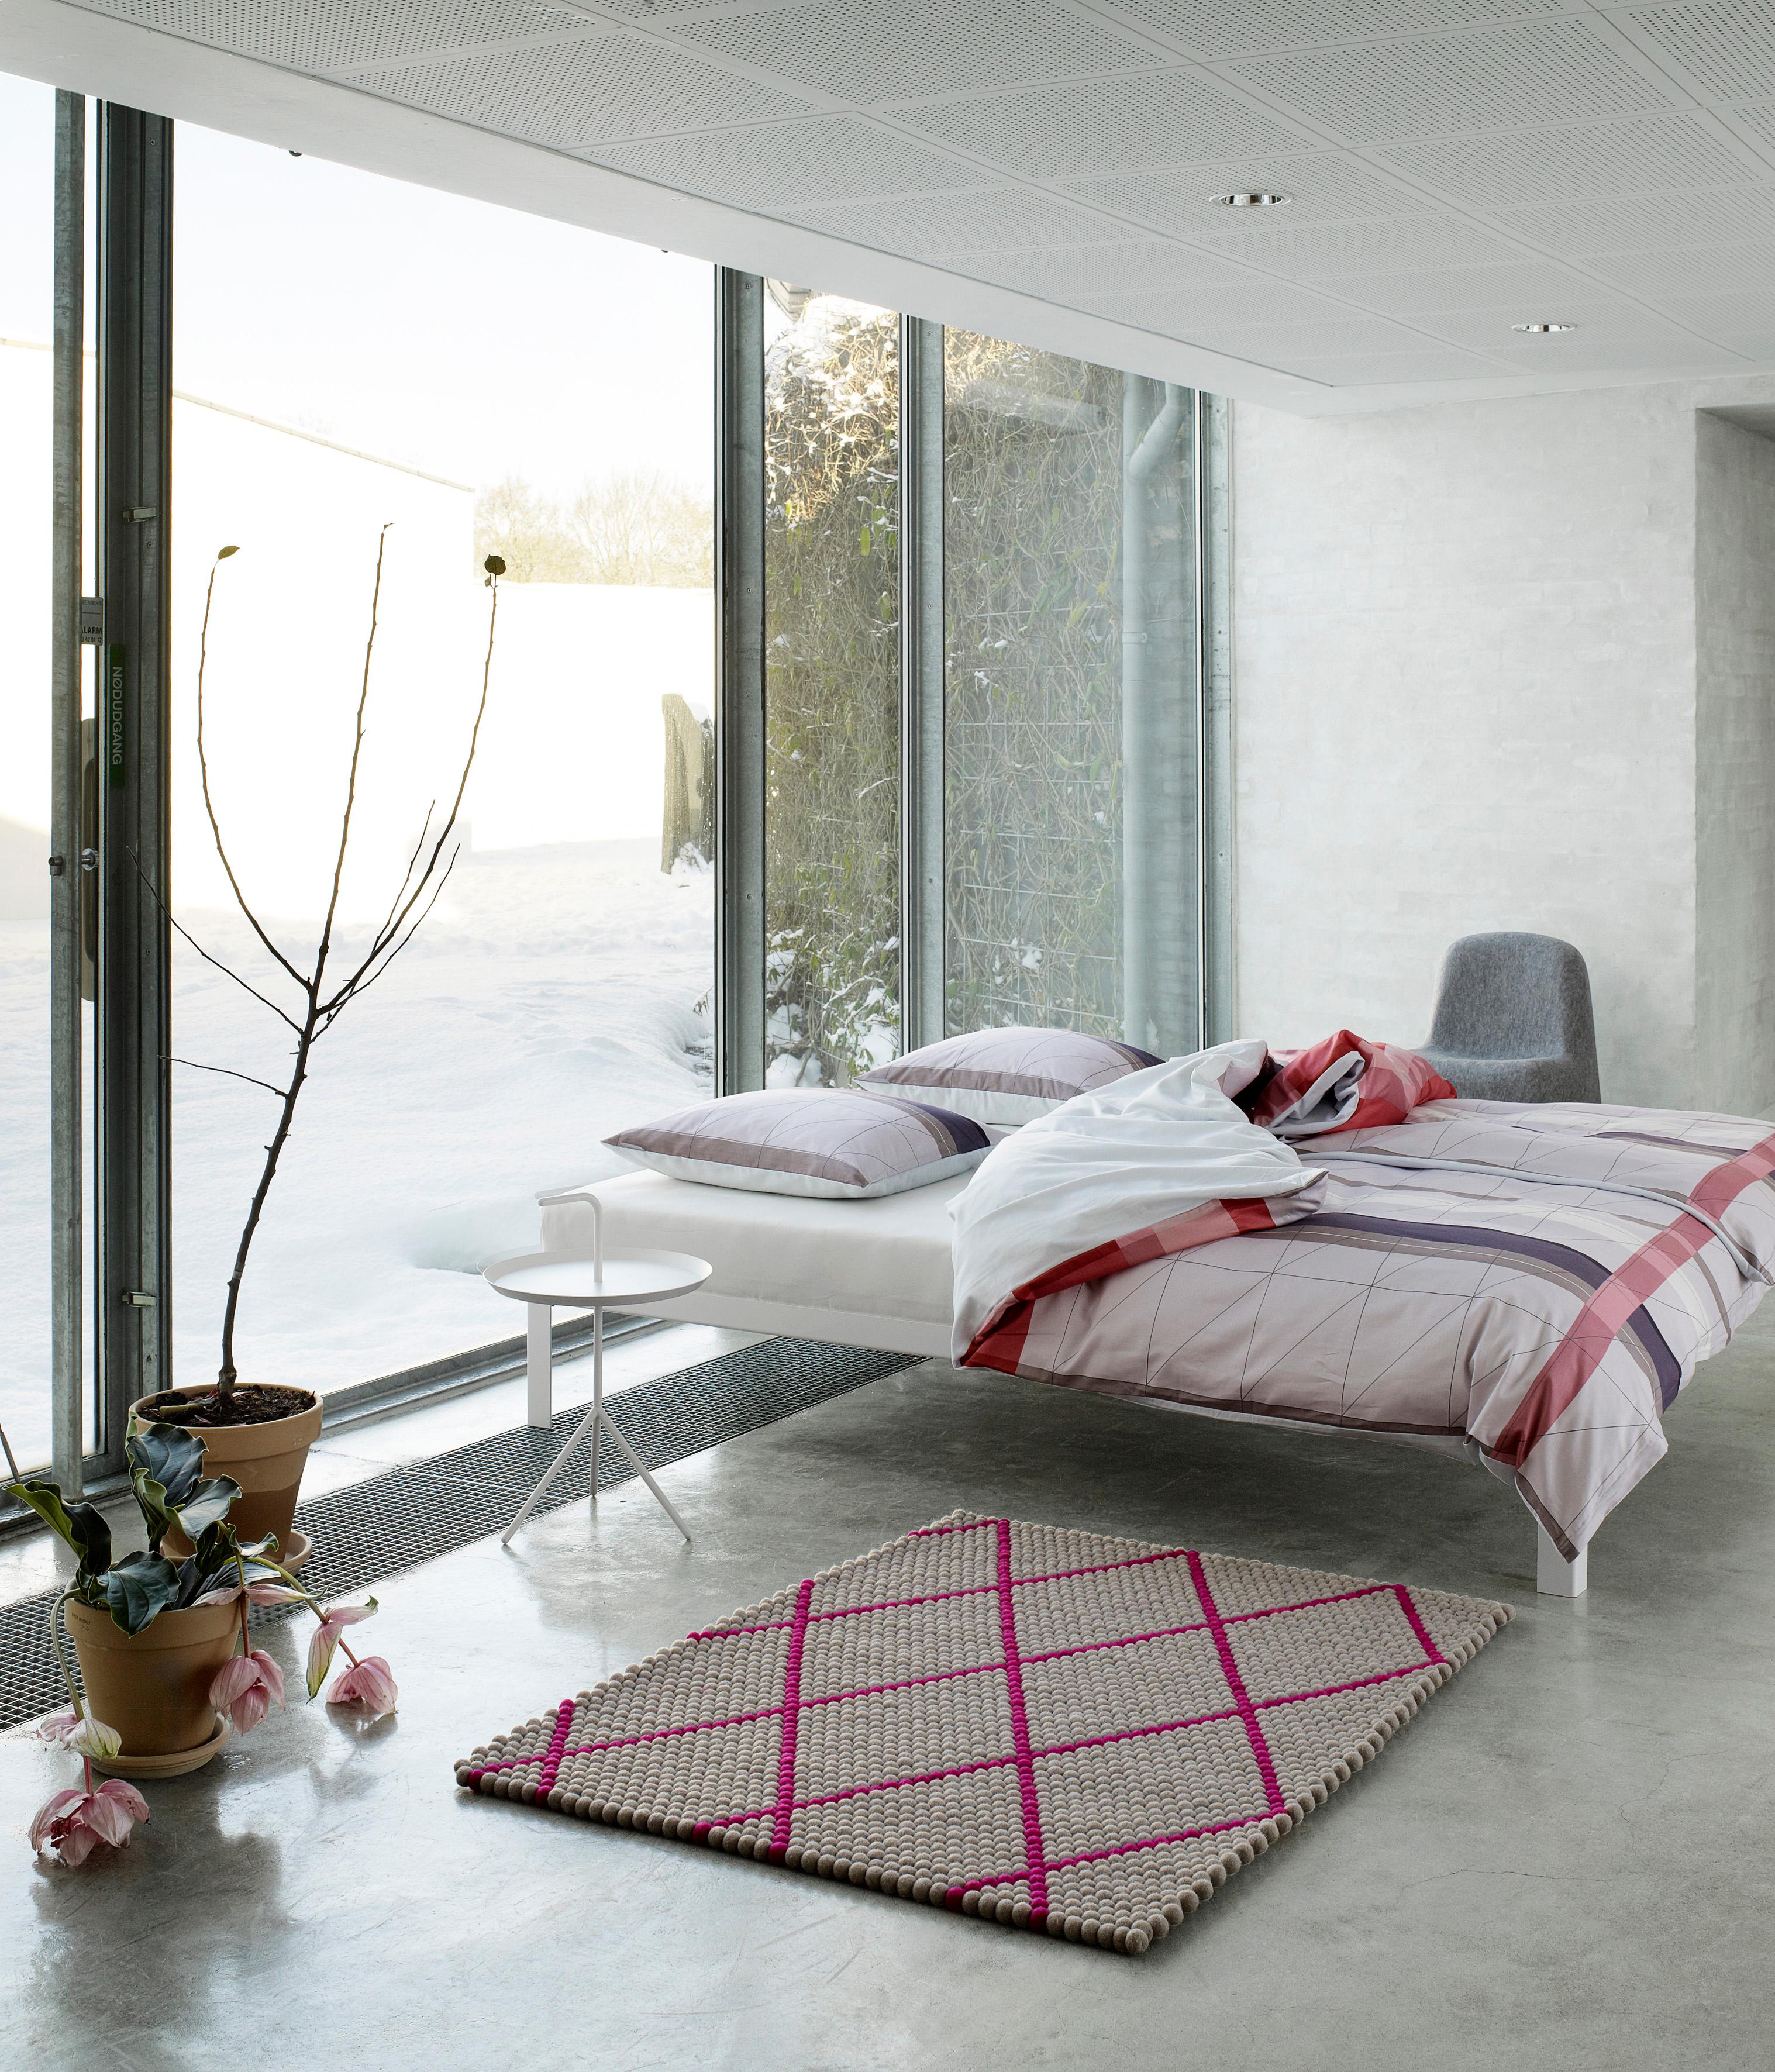 Teppich mit Rautenmuster im Schlafzimmer #minimalistisch #rautenmusterteppich #newyorkstyle ©Hay